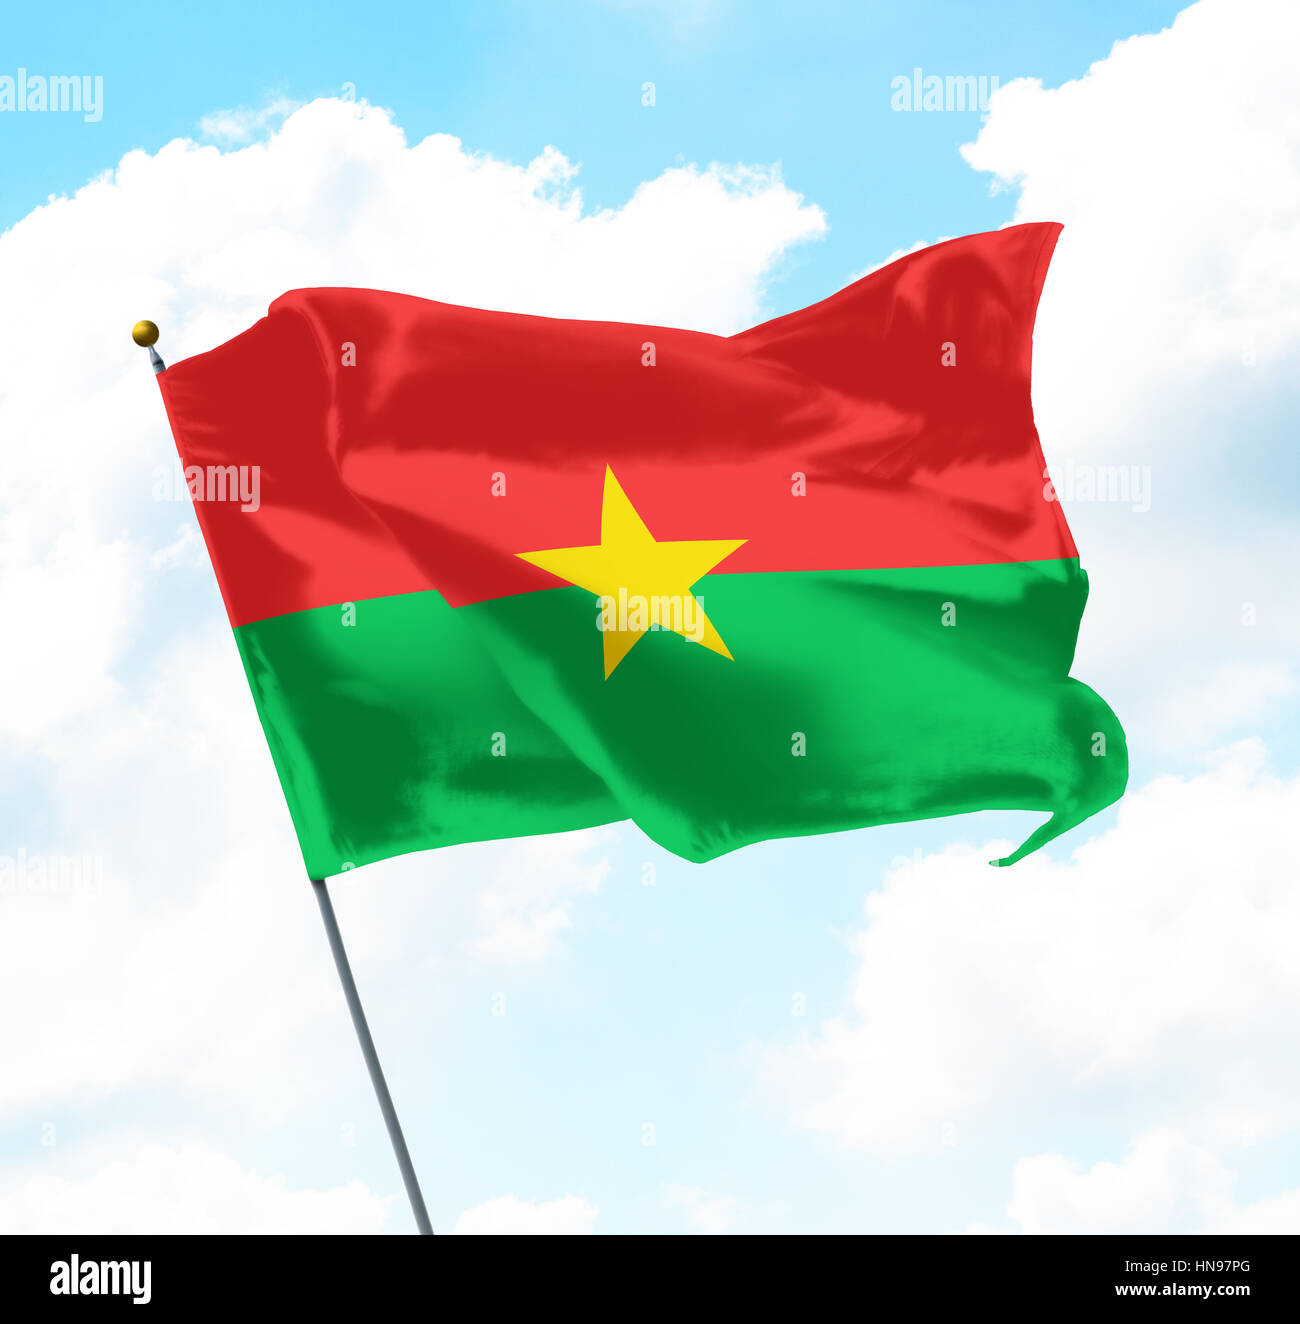 Pavillon de l'Burkina Faso soulevées dans le ciel Banque D'Images